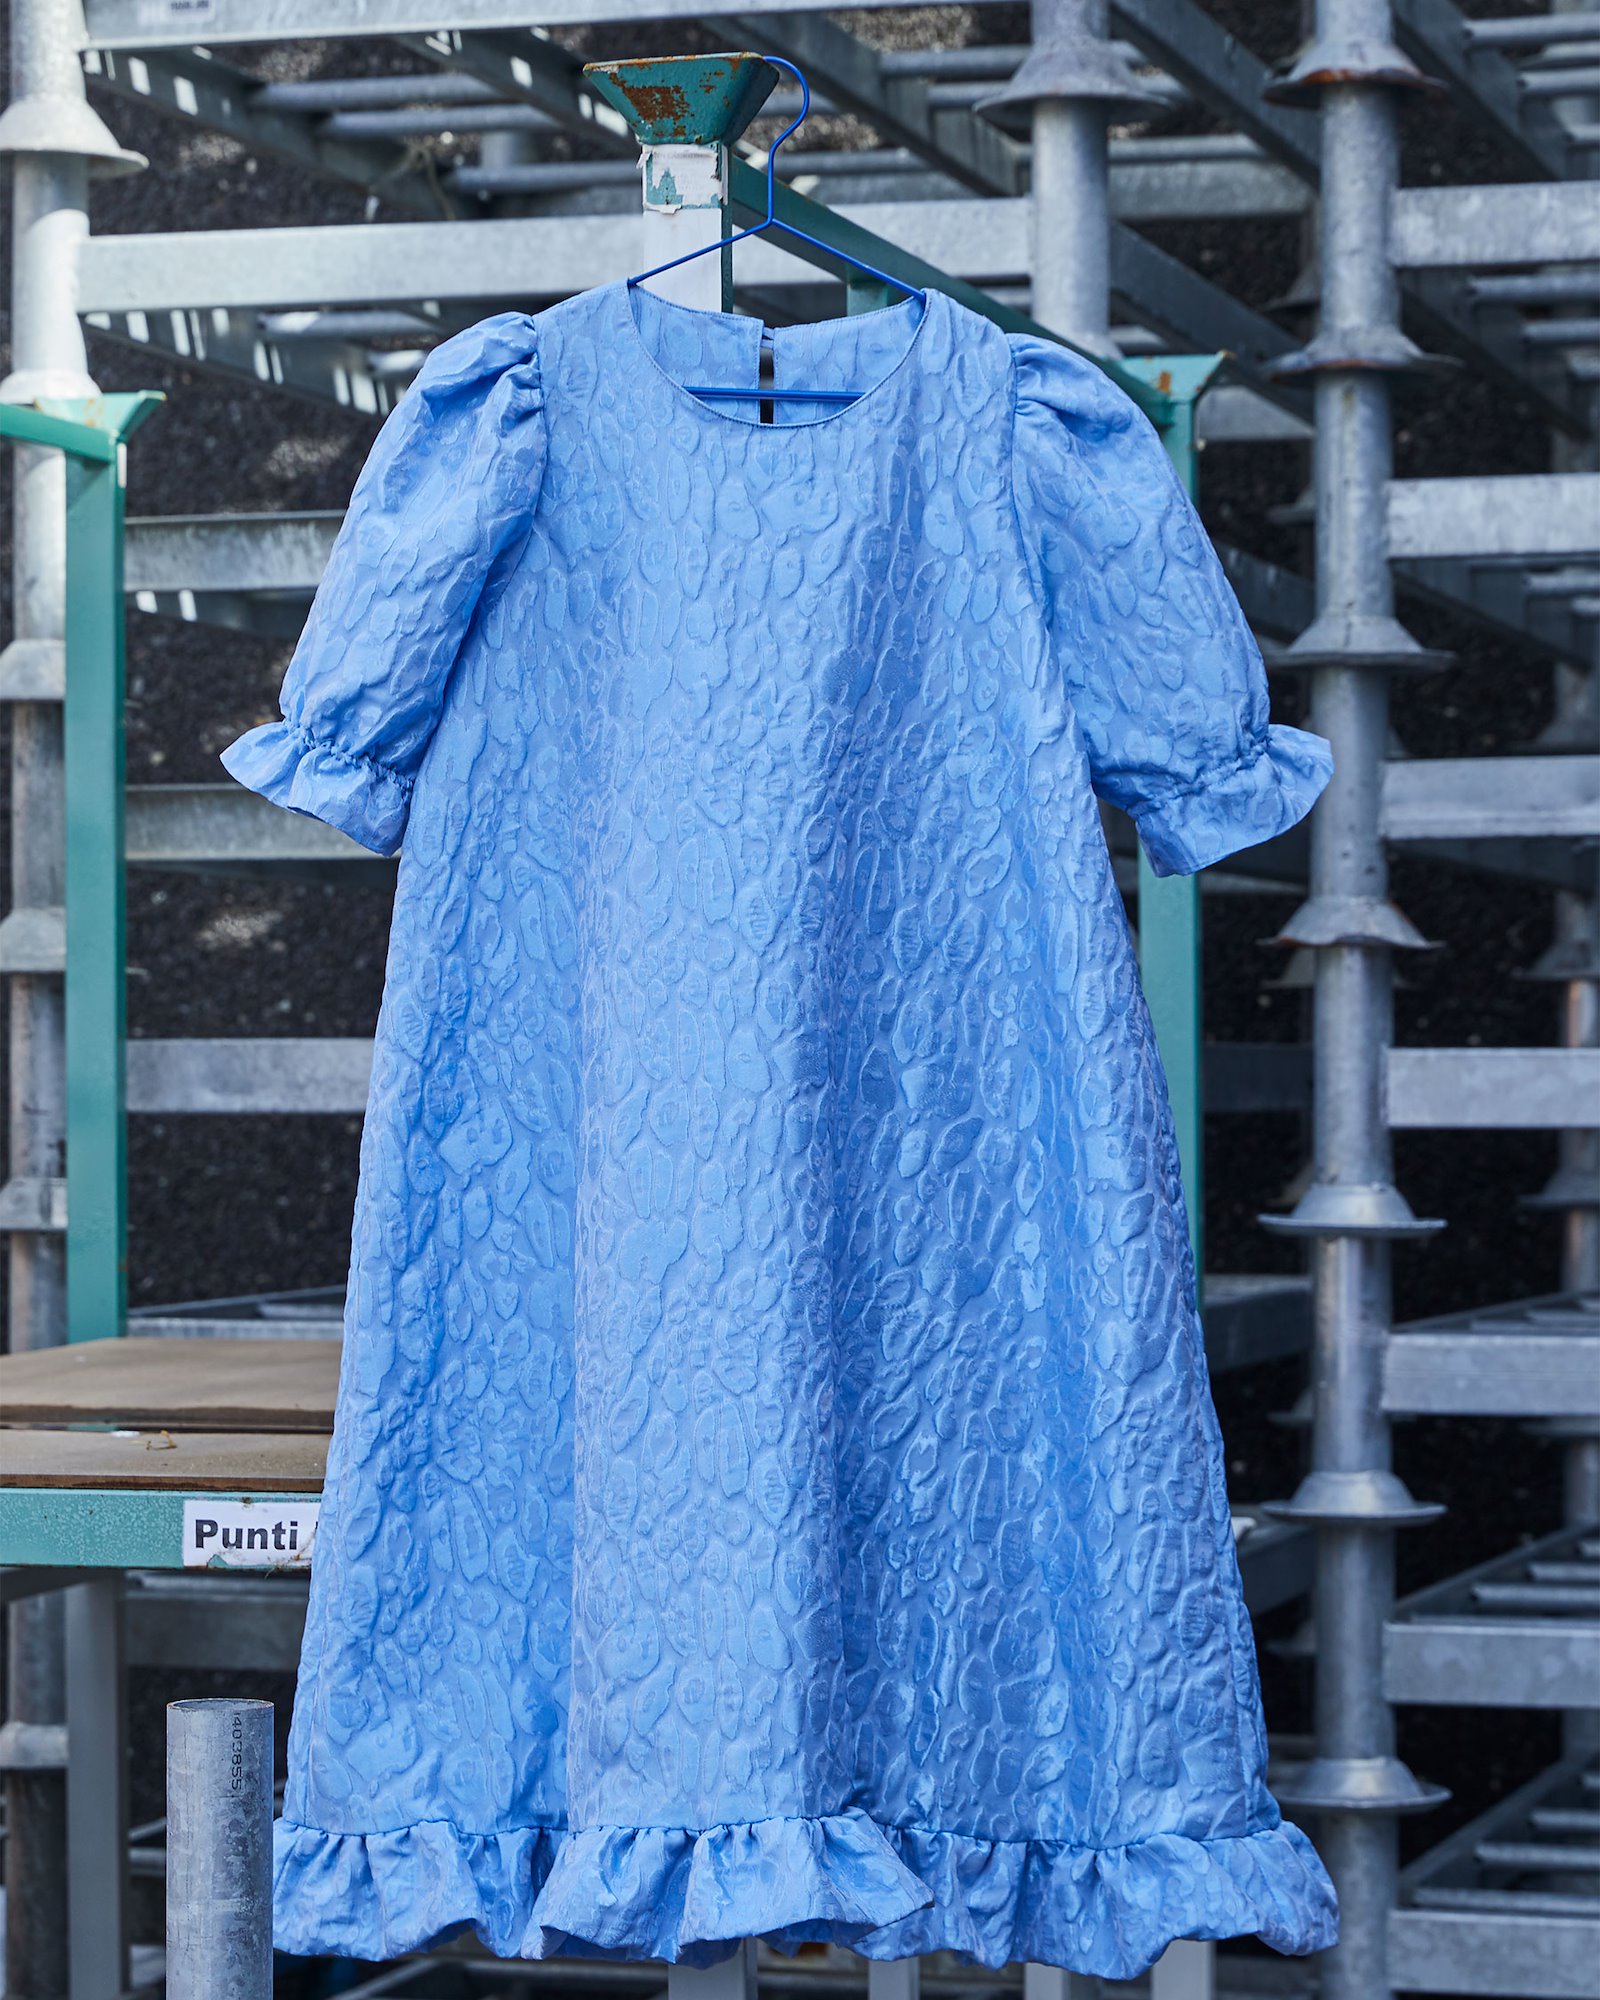 Skriv ut eget sömnadsmönster: A-dress with puff sleeve #pernilledress DIY2401_pack.jpg